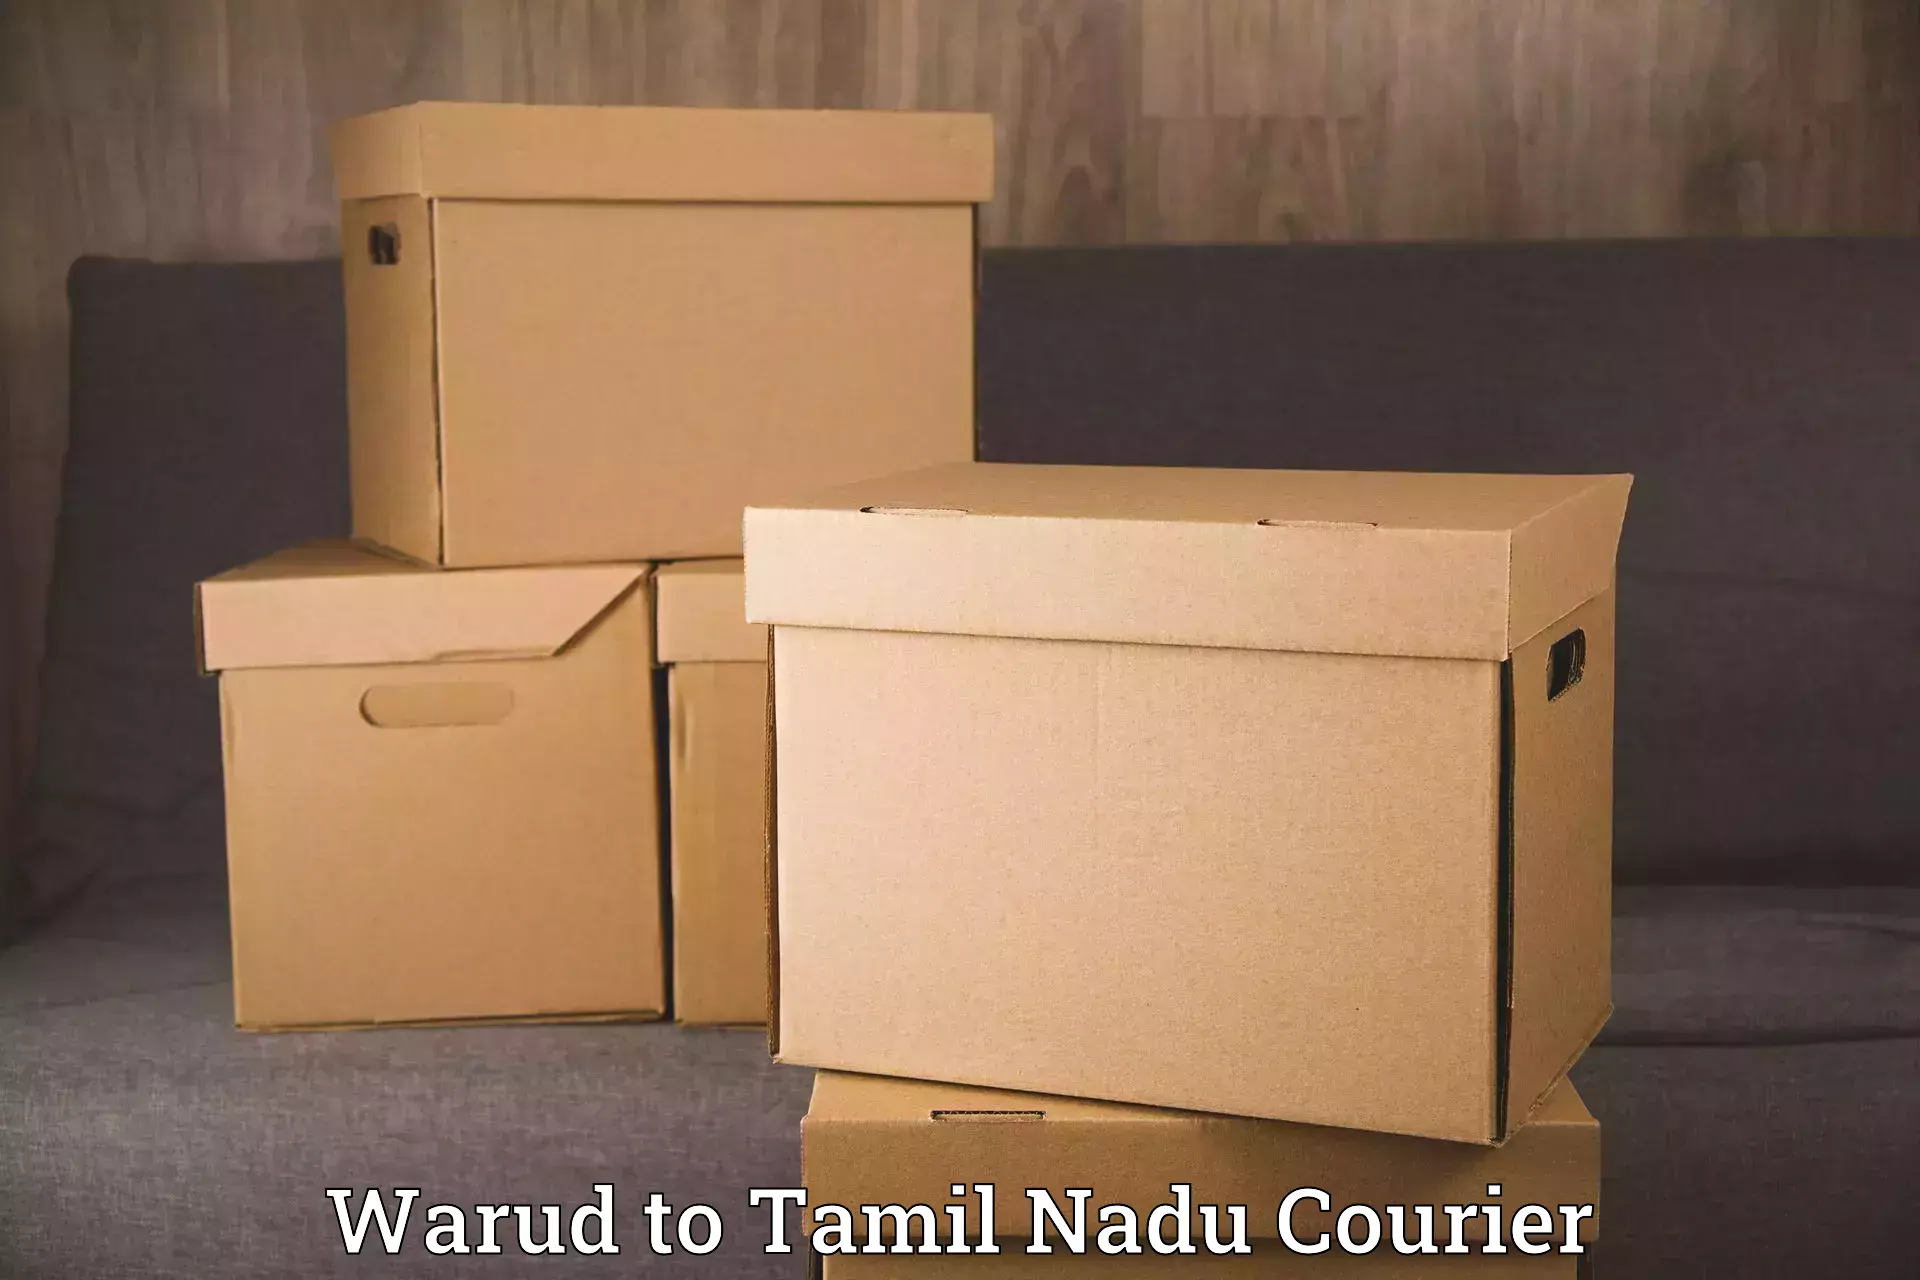 Furniture transport specialists Warud to Tamil Nadu